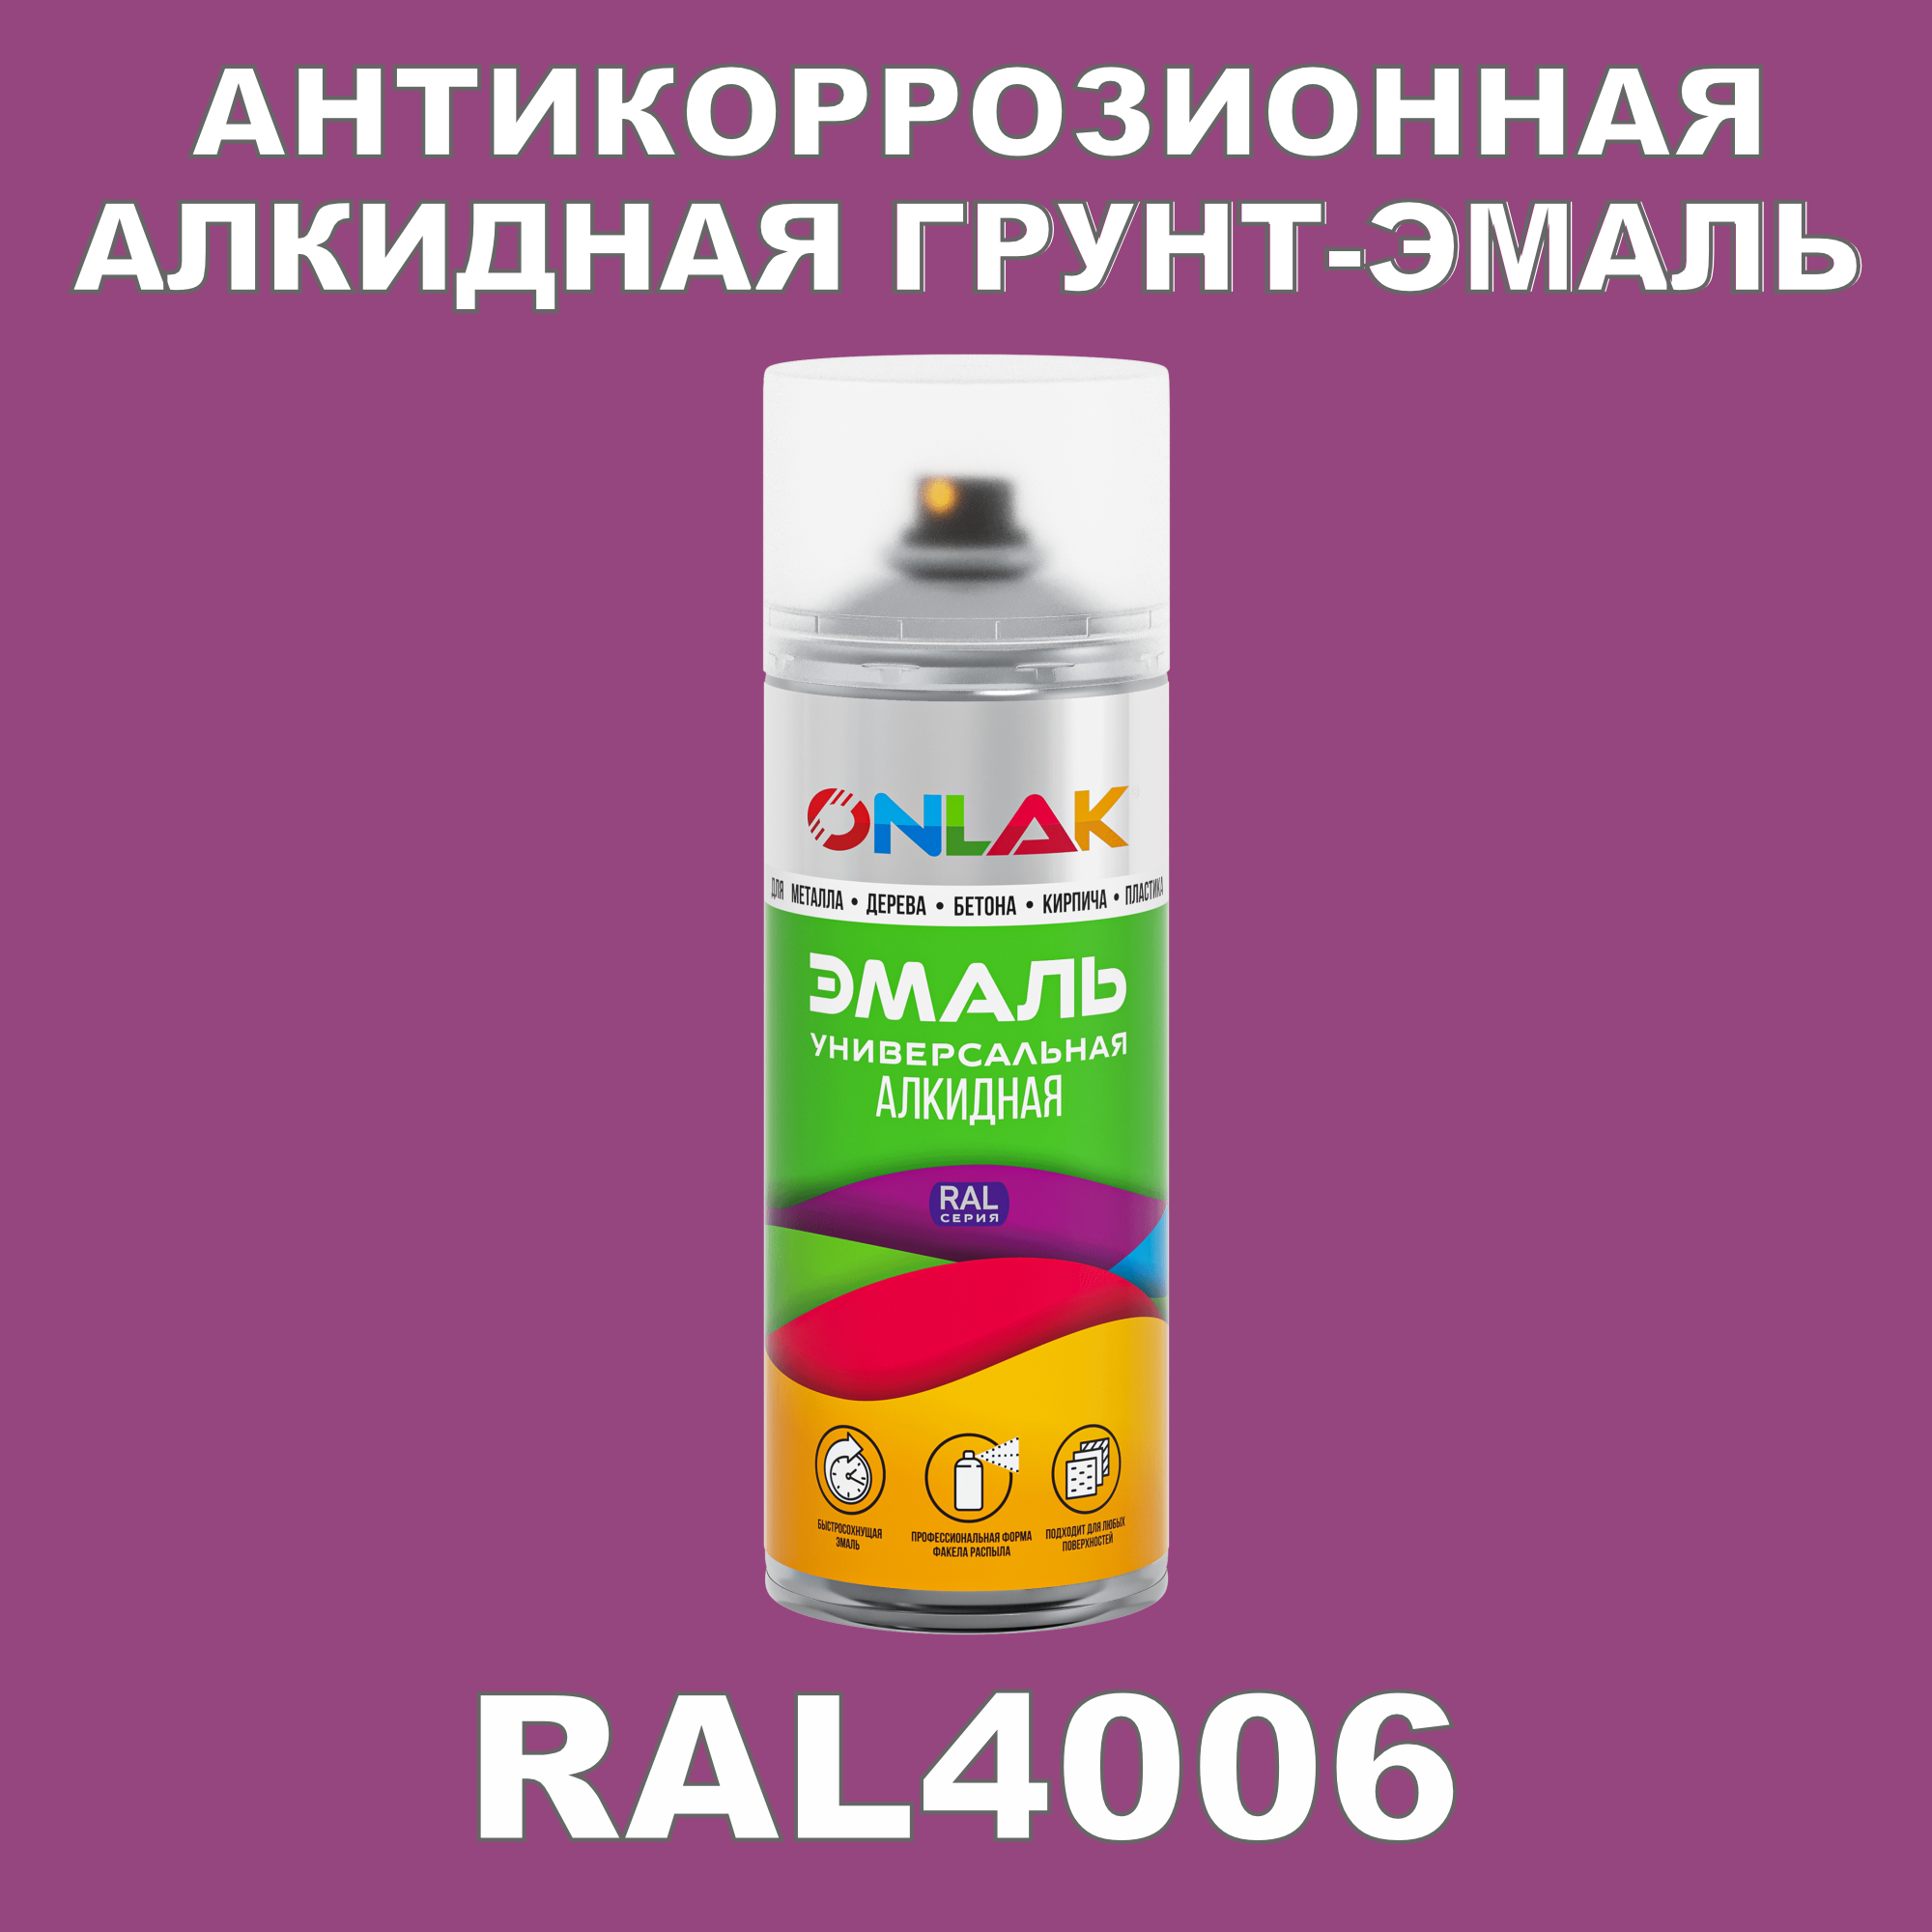 Антикоррозионная грунт-эмаль ONLAK RAL 4006,фиолетовый,682 мл artuniq color violet цветной грунт для аквариума фиолетовый 9 кг